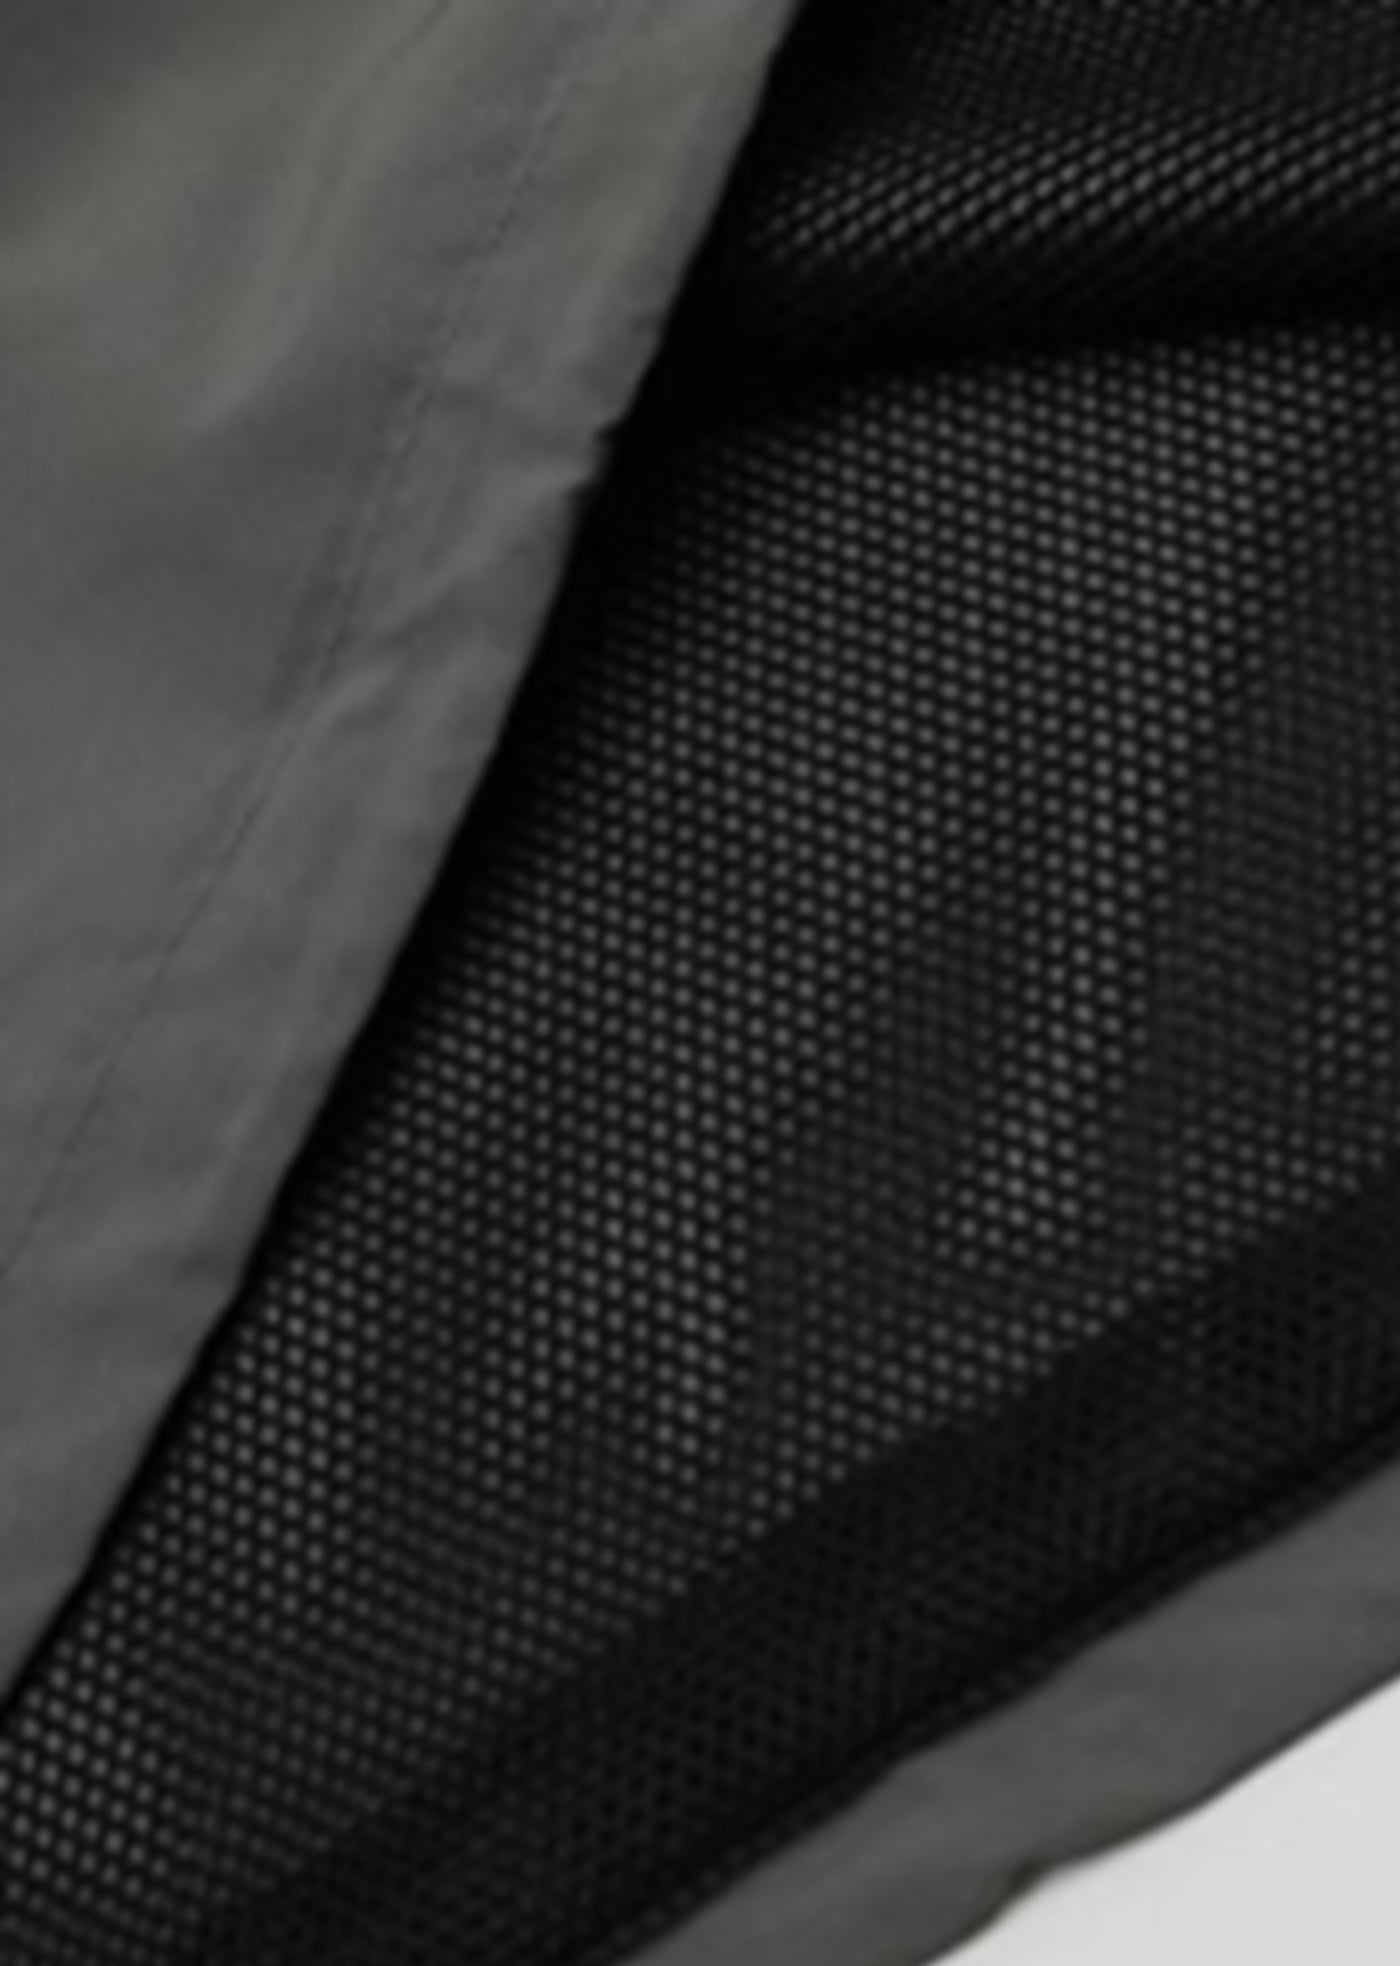 [4/29 New] V neckline sleeve design over silhouette golf long sleeve t-shirt HL3036